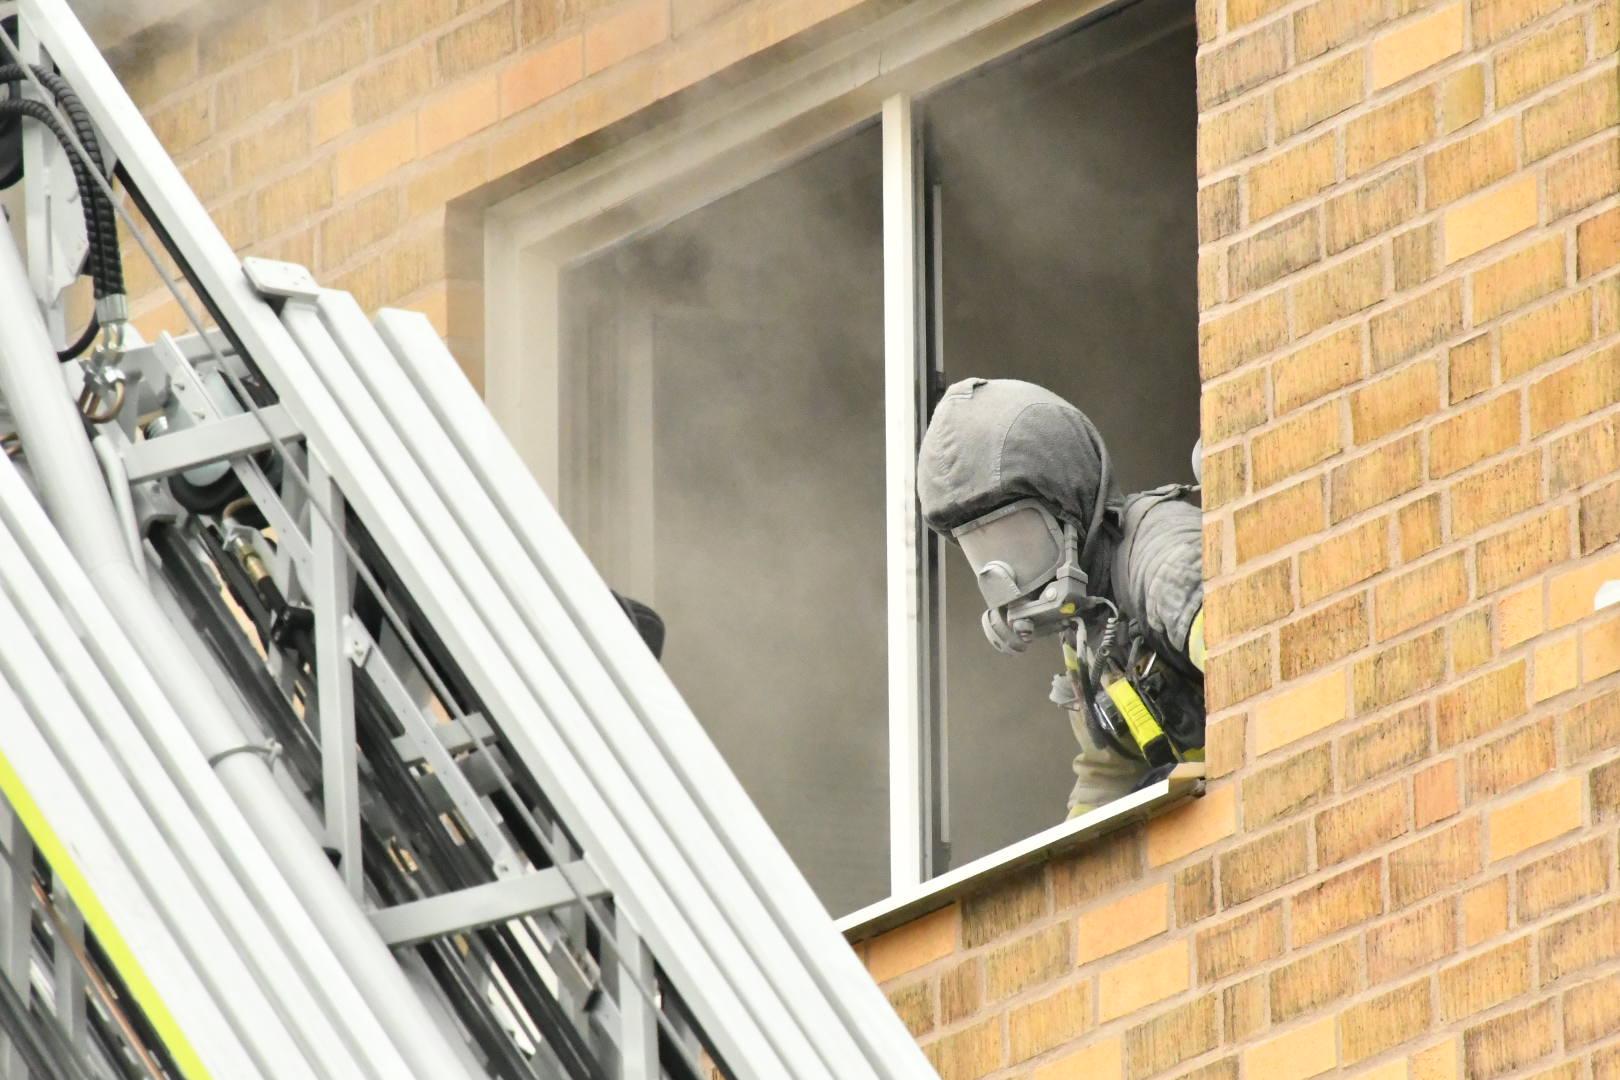 Vid 12:47 i dag inkom larm om en fullt utvecklad brand i ett flerfamiljshus i Malmö. 